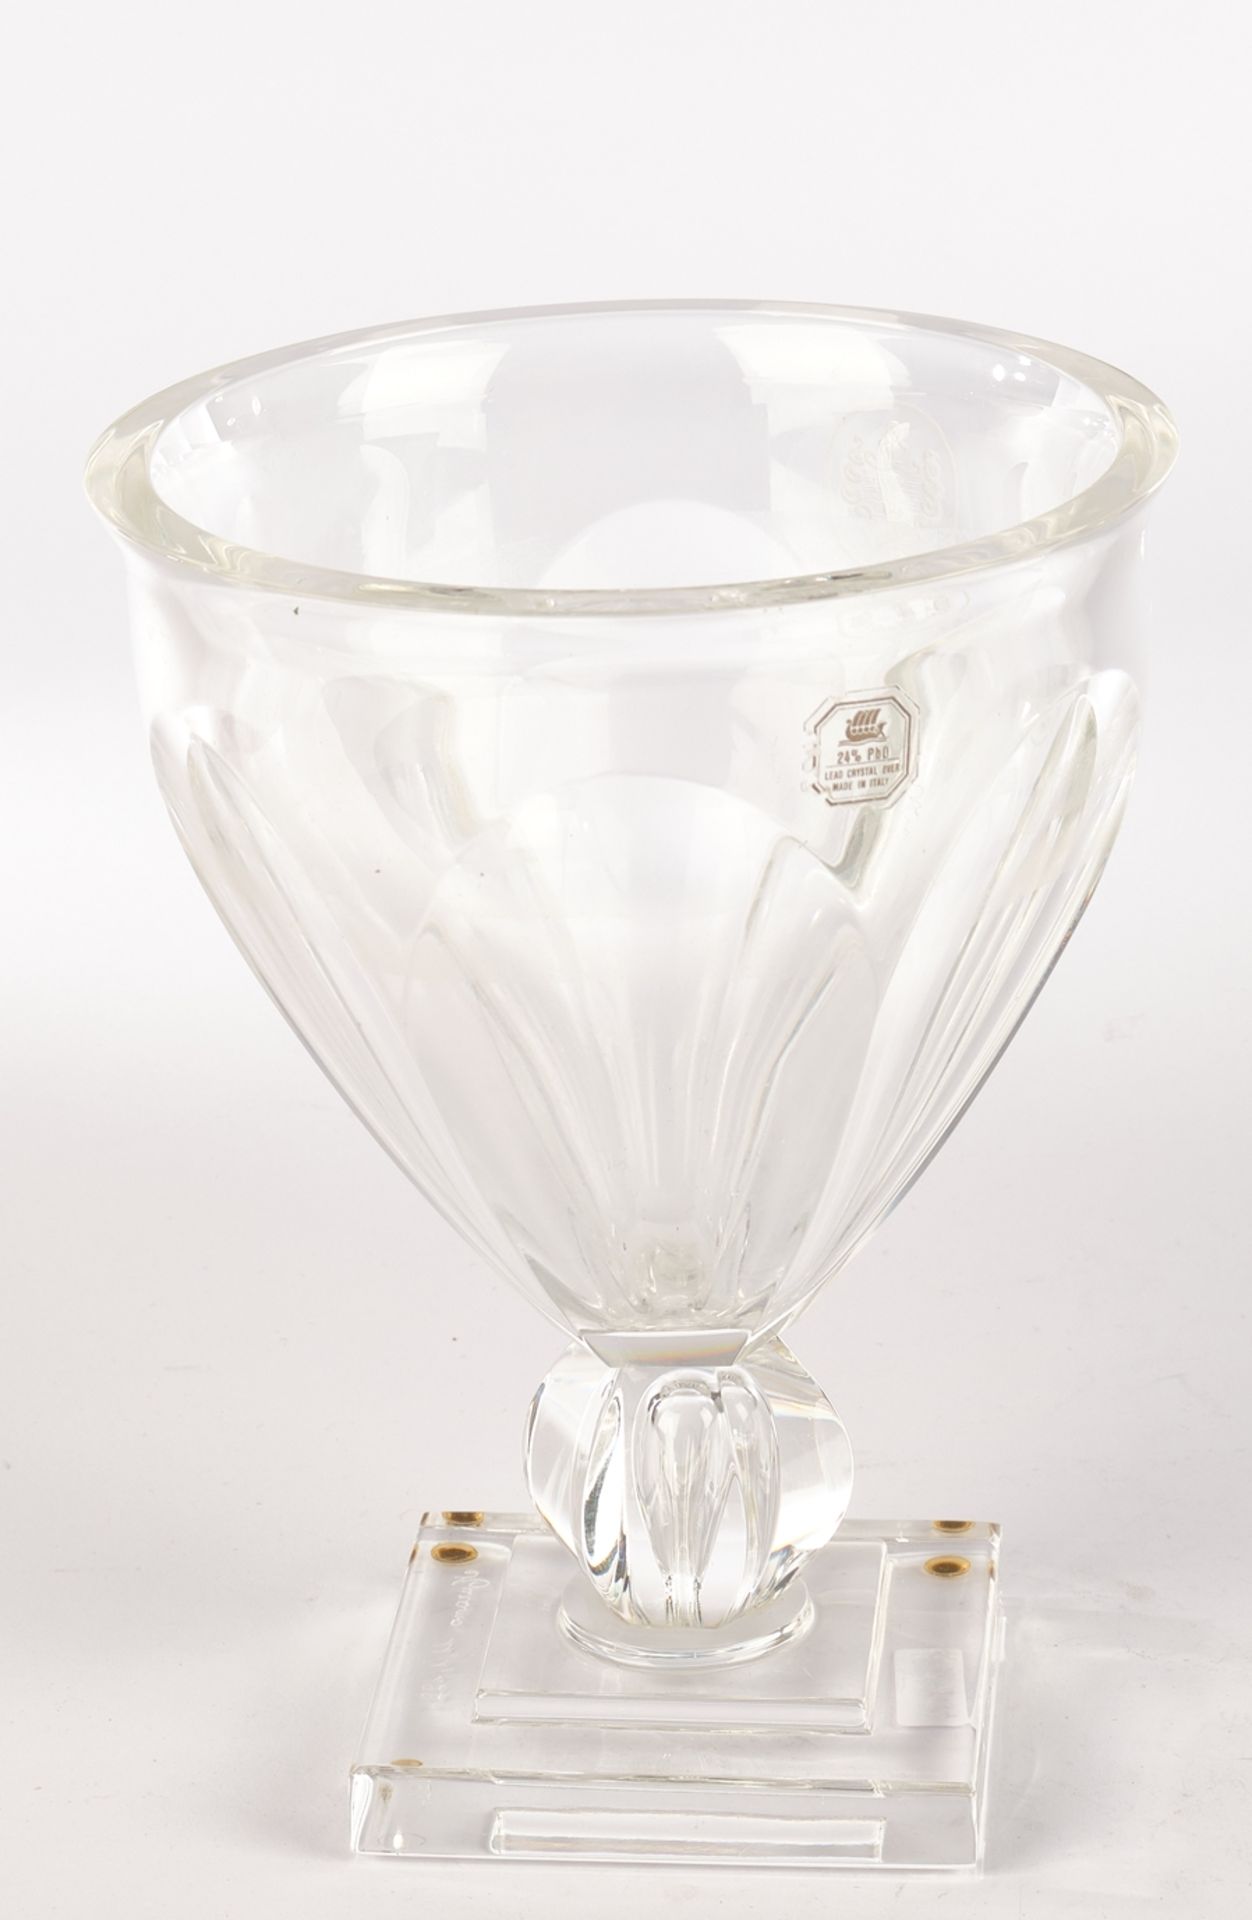 Vase, Murano, 1994, farbloses Kristallglas, facettierter Korpus auf quadratischem Fuß, Wappenkartus - Image 2 of 2